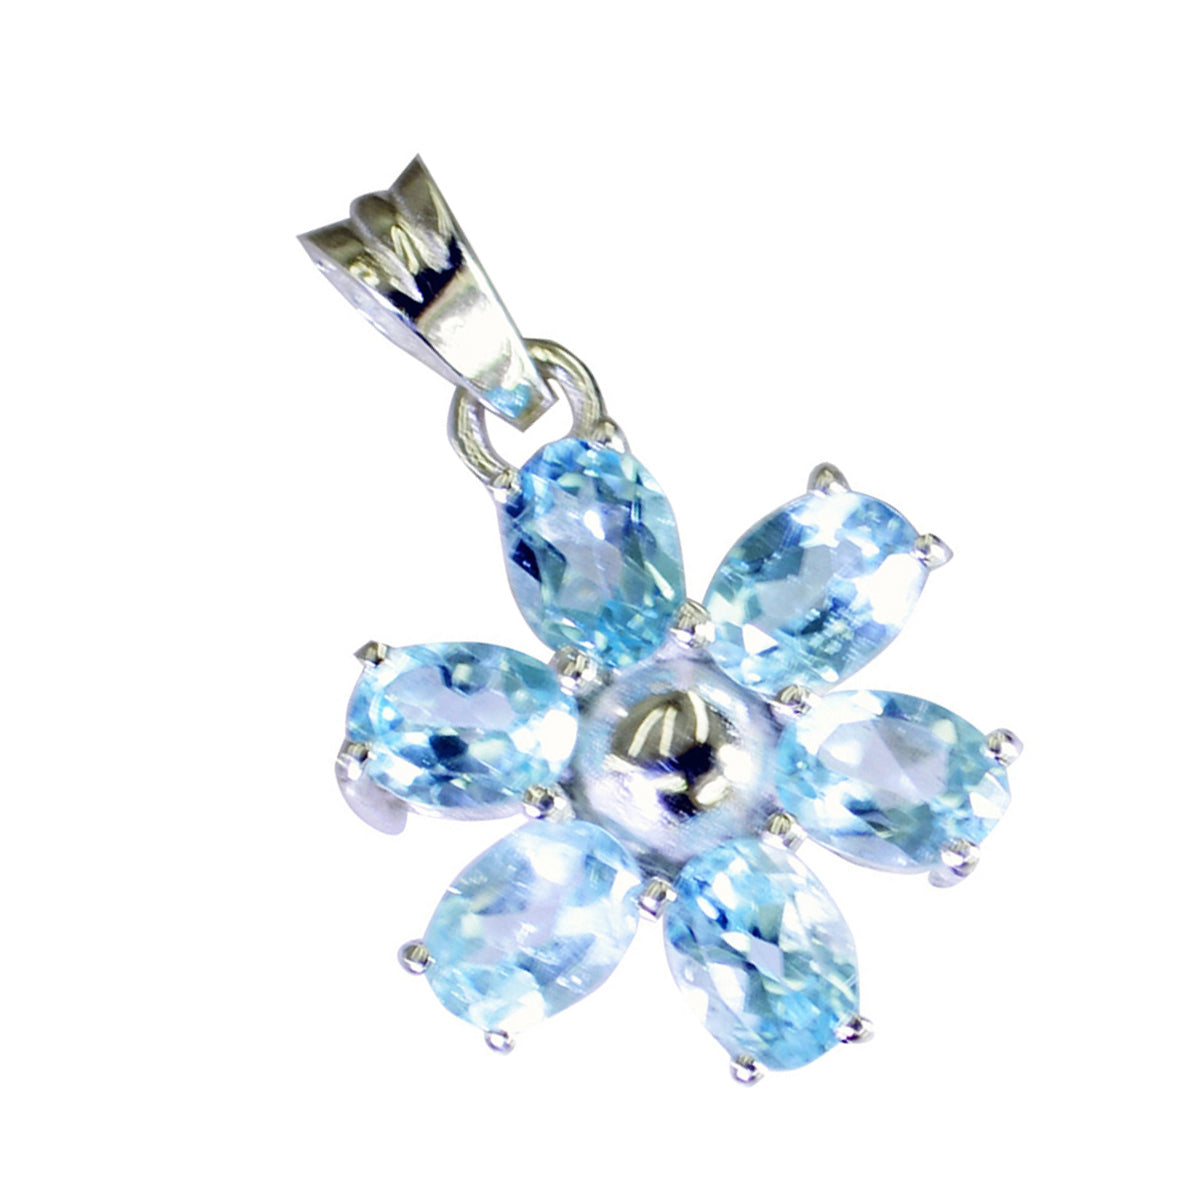 Riyo bonitas gemas ovaladas facetadas azul topacio azul colgante de plata maciza regalo para boda